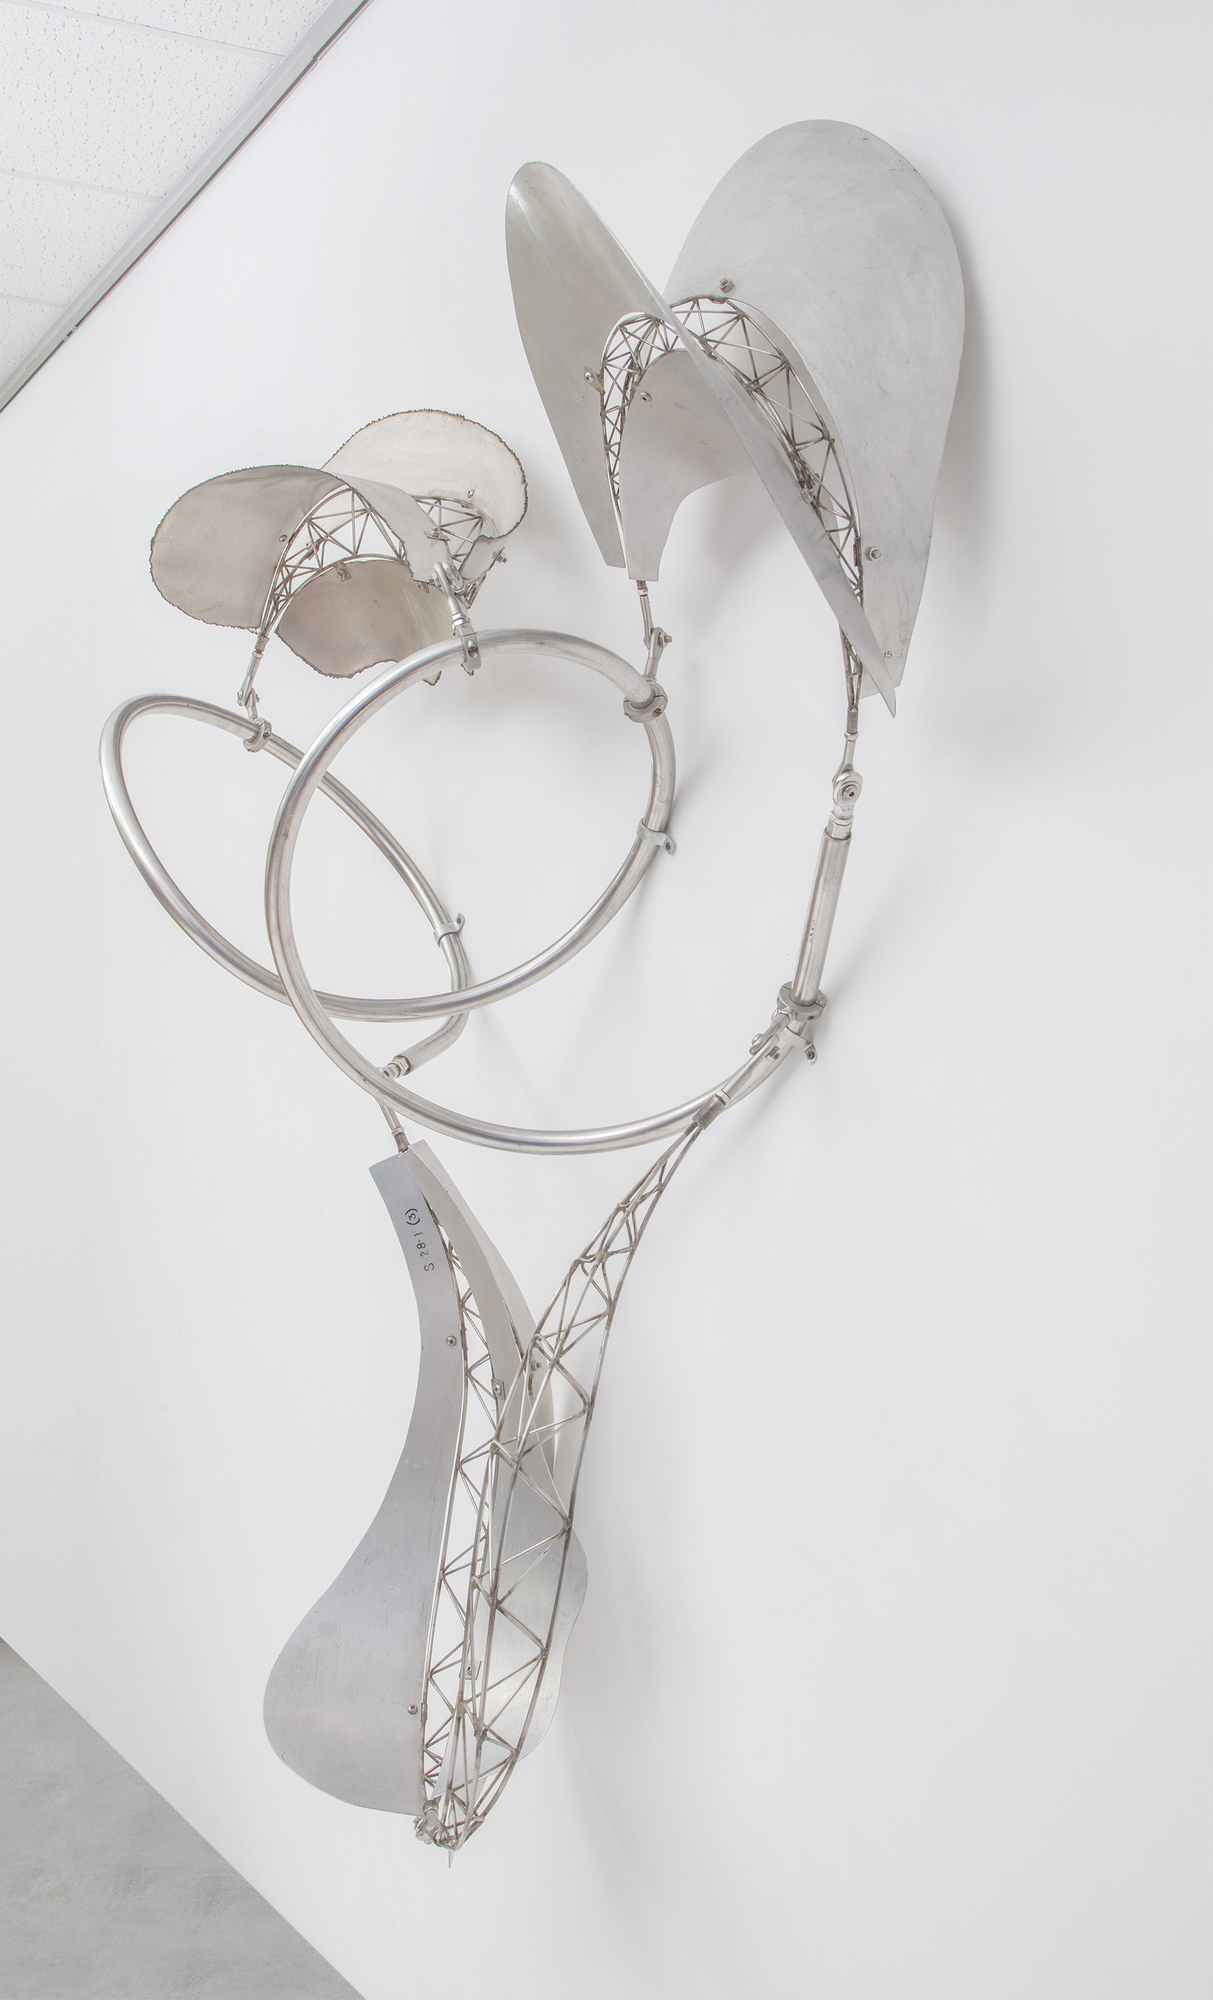 Frank Stellas Bali-Skulpturenserie zeichnet sich durch schwebende und fließende Formen aus, die sich in den Raum des Betrachters erstrecken und zur Interaktion zwischen dem Objekt und seiner Umgebung einladen. Der &quot;Dadap&quot;, eine Baumart, die in der balinesischen Kultur mit Wachstum und ritueller Bedeutung assoziiert wird, spiegelt die organische und dynamische Natur von Stellas Skulpturen wider. Mit dem Wechsel von Bambus zu Edelstahl und Aluminium hat Stella das Wesen der balinesischen Ästhetik bewahrt, die organische, fließende Formen preist, die sich dynamisch mit ihrem Raum verbinden. Dadap stellt eine Kontinuität in Stellas thematischer Erkundung dar, bei der der Geist seiner Arbeit über die Materialität hinausgeht. Metall bietet eine andere Textur, ein anderes Reflexionsvermögen und eine andere Interaktion mit Licht und Raum, hält aber dennoch an den Prinzipien von Bewegung und Interaktivität fest. Es handelt sich um eine kreative Übertragung von Form und Konzept über verschiedene Medien hinweg, wobei der Geist der ursprünglichen Inspiration beibehalten wird, während die Eigenschaften des neuen Materials diese Ideen in einem neuen Kontext zum Ausdruck bringen können.